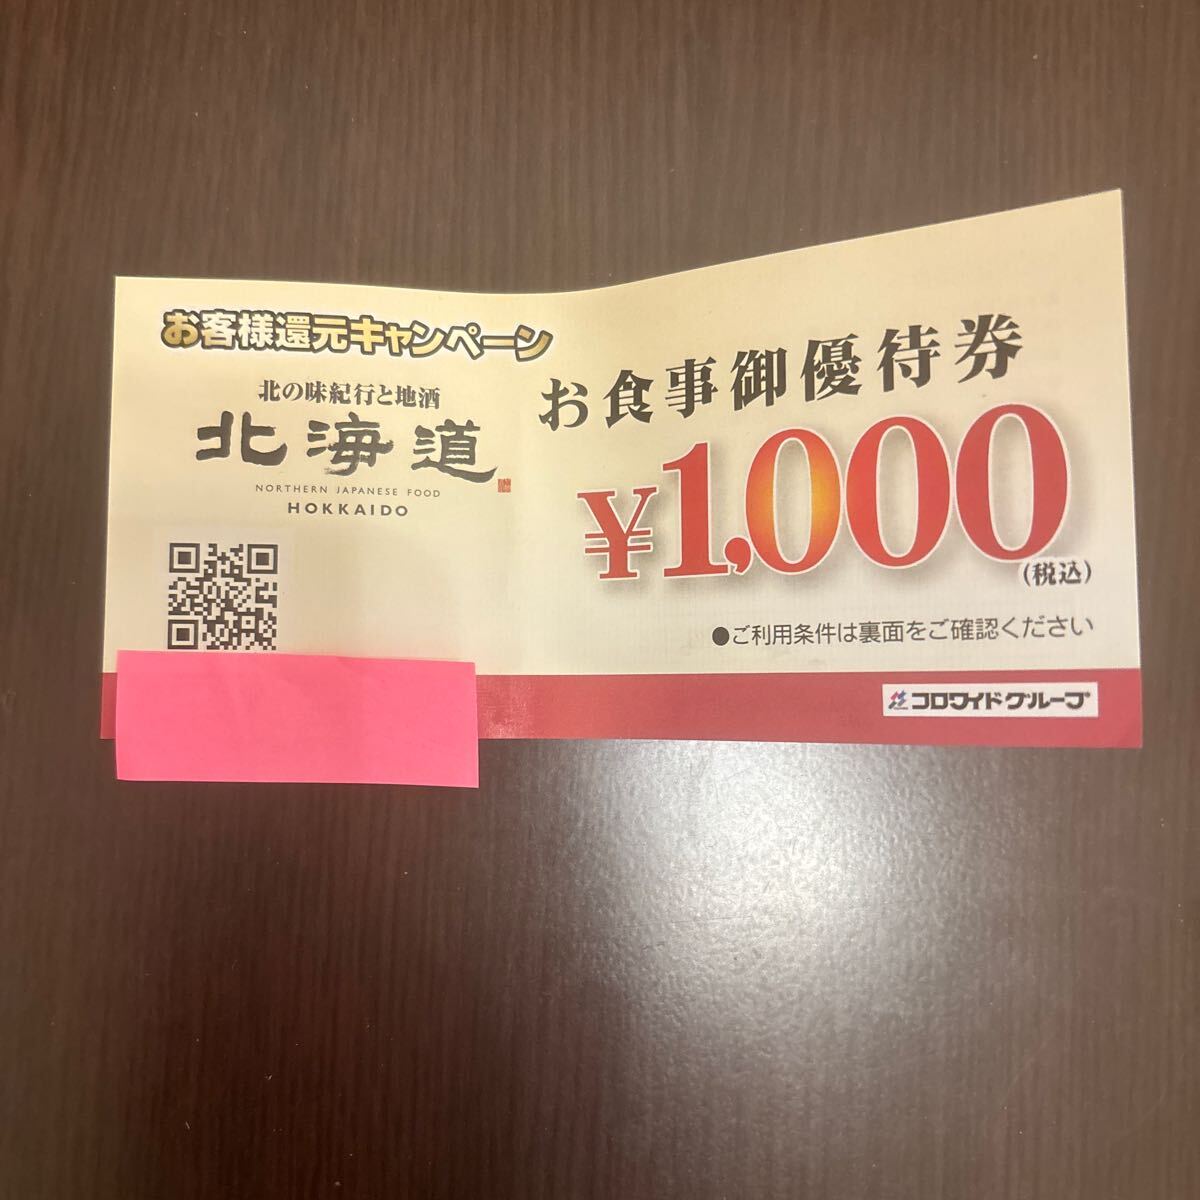 北海道 食事優待券 1000円 コロワイドグループの画像1